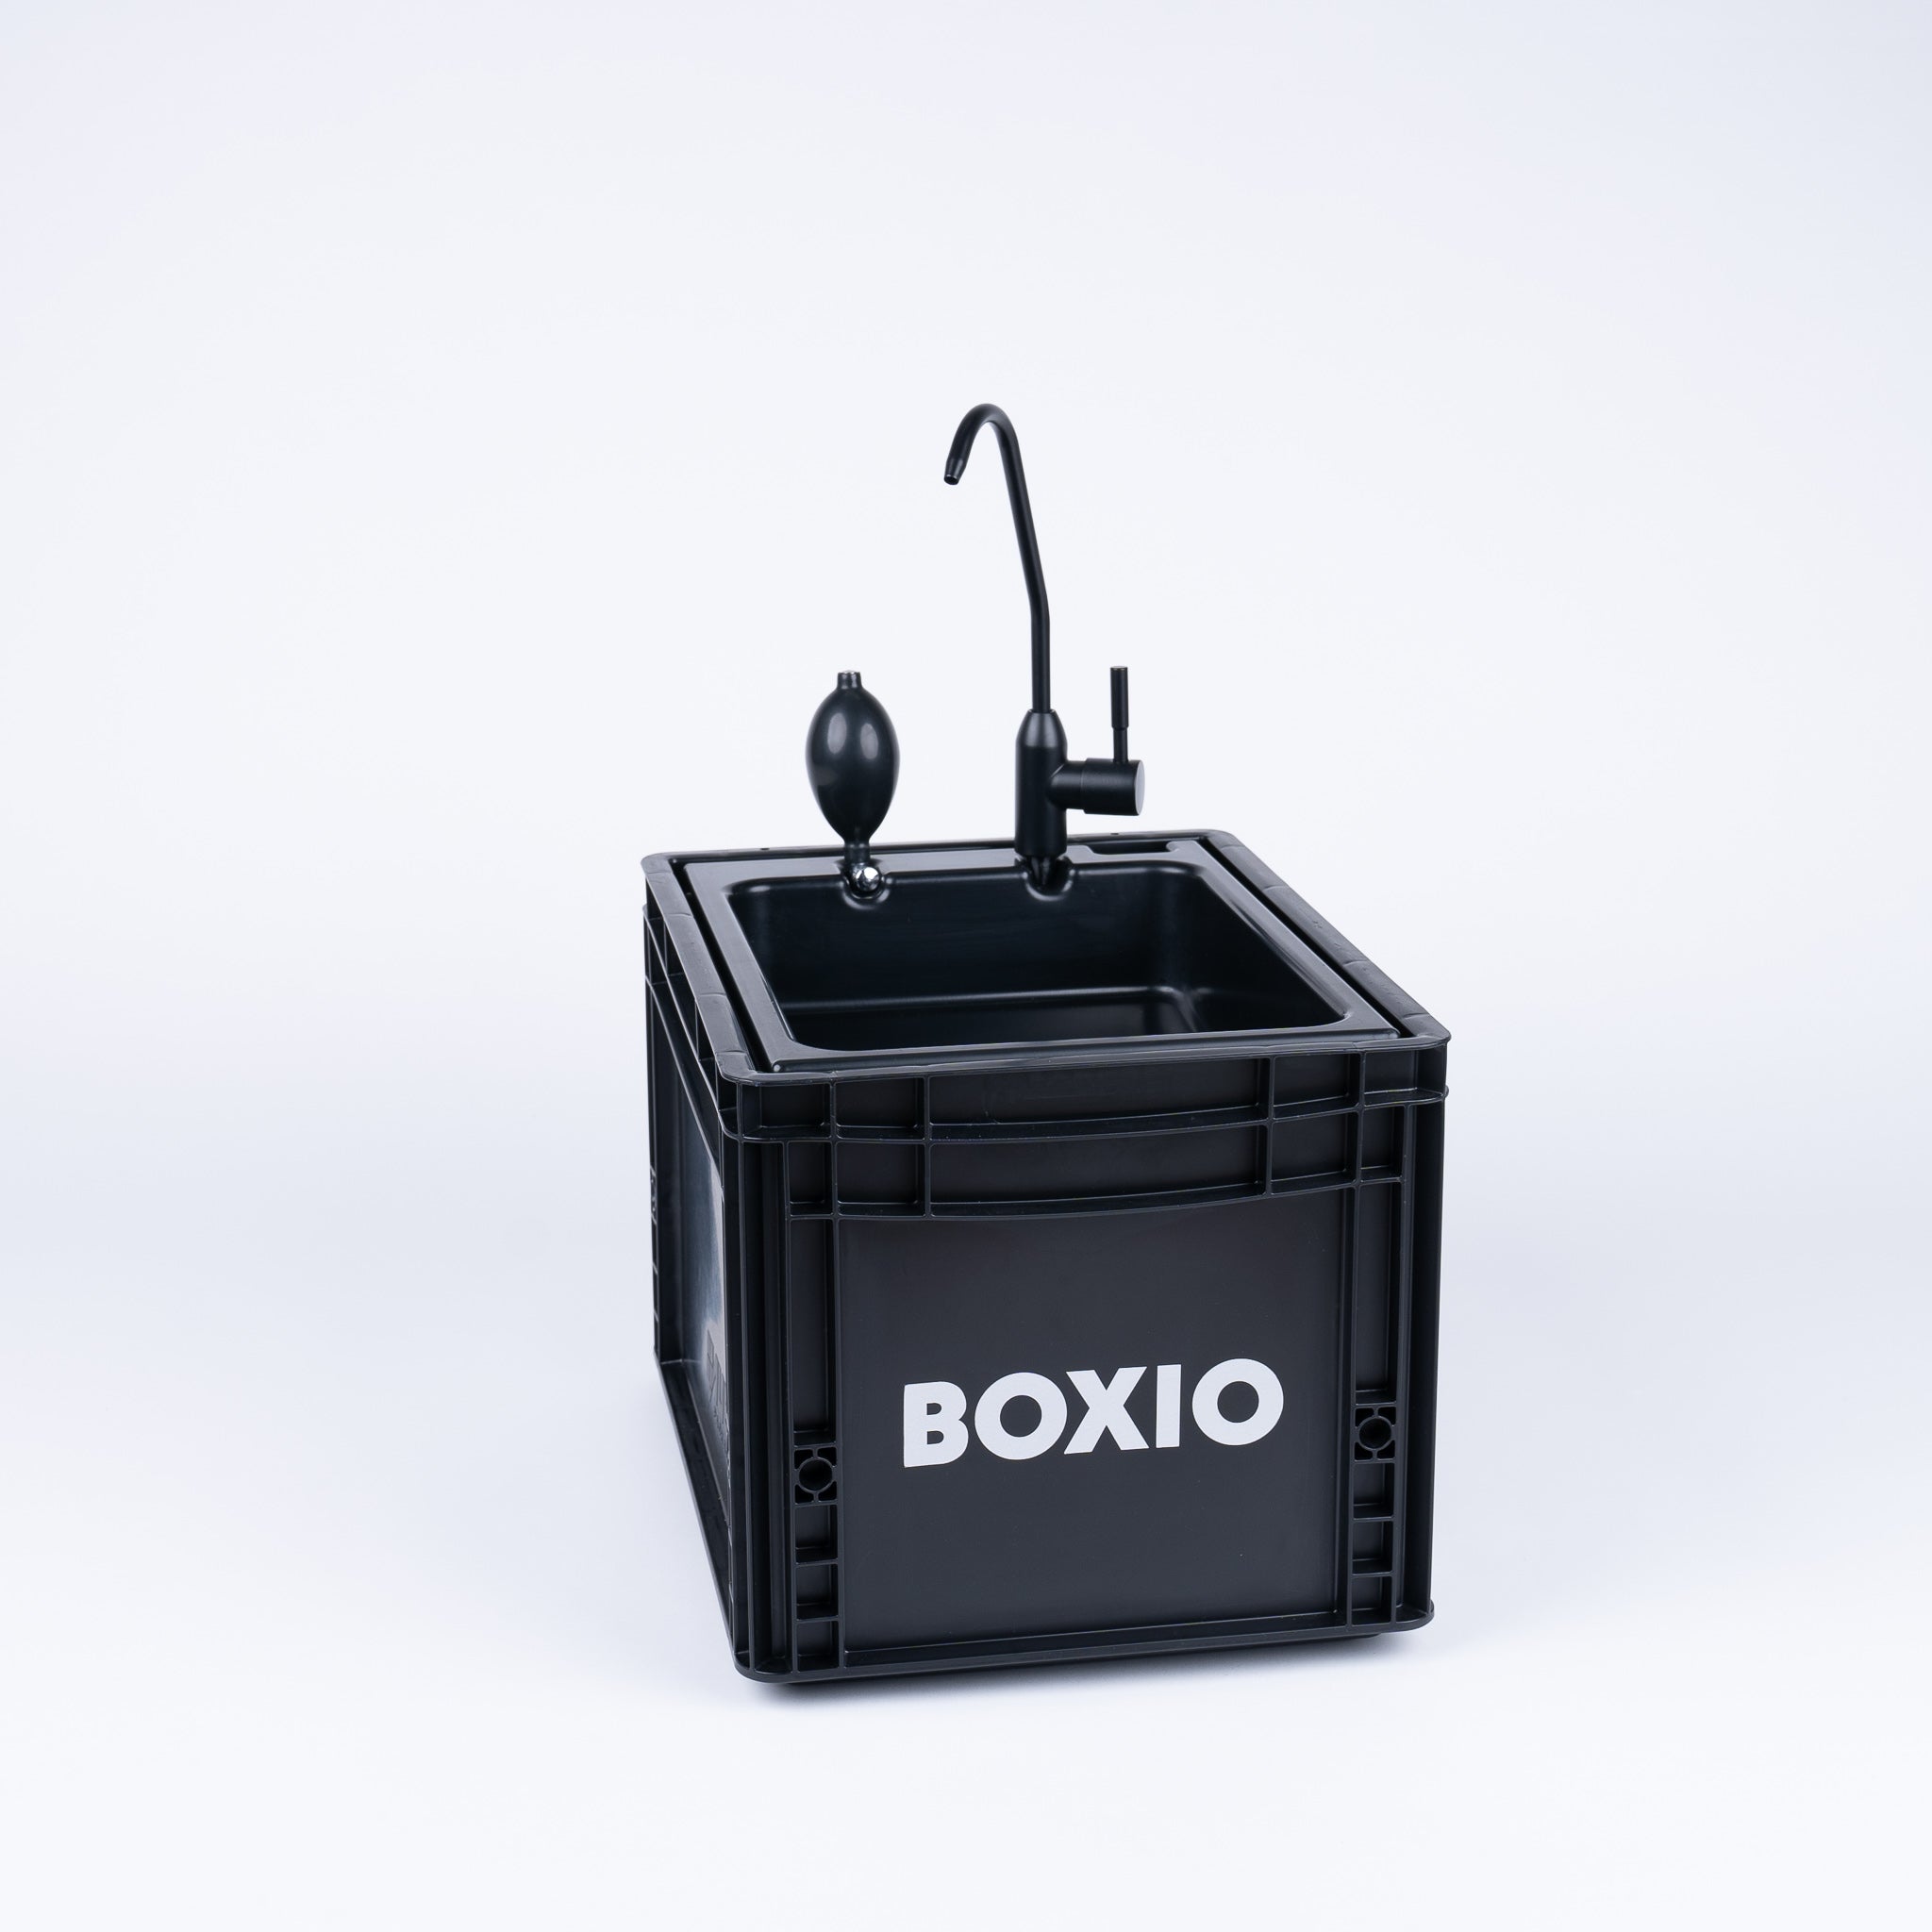 BOXIO SANITARIO - Set completo con wc a scomparsa, lavabo mobile e accessori.